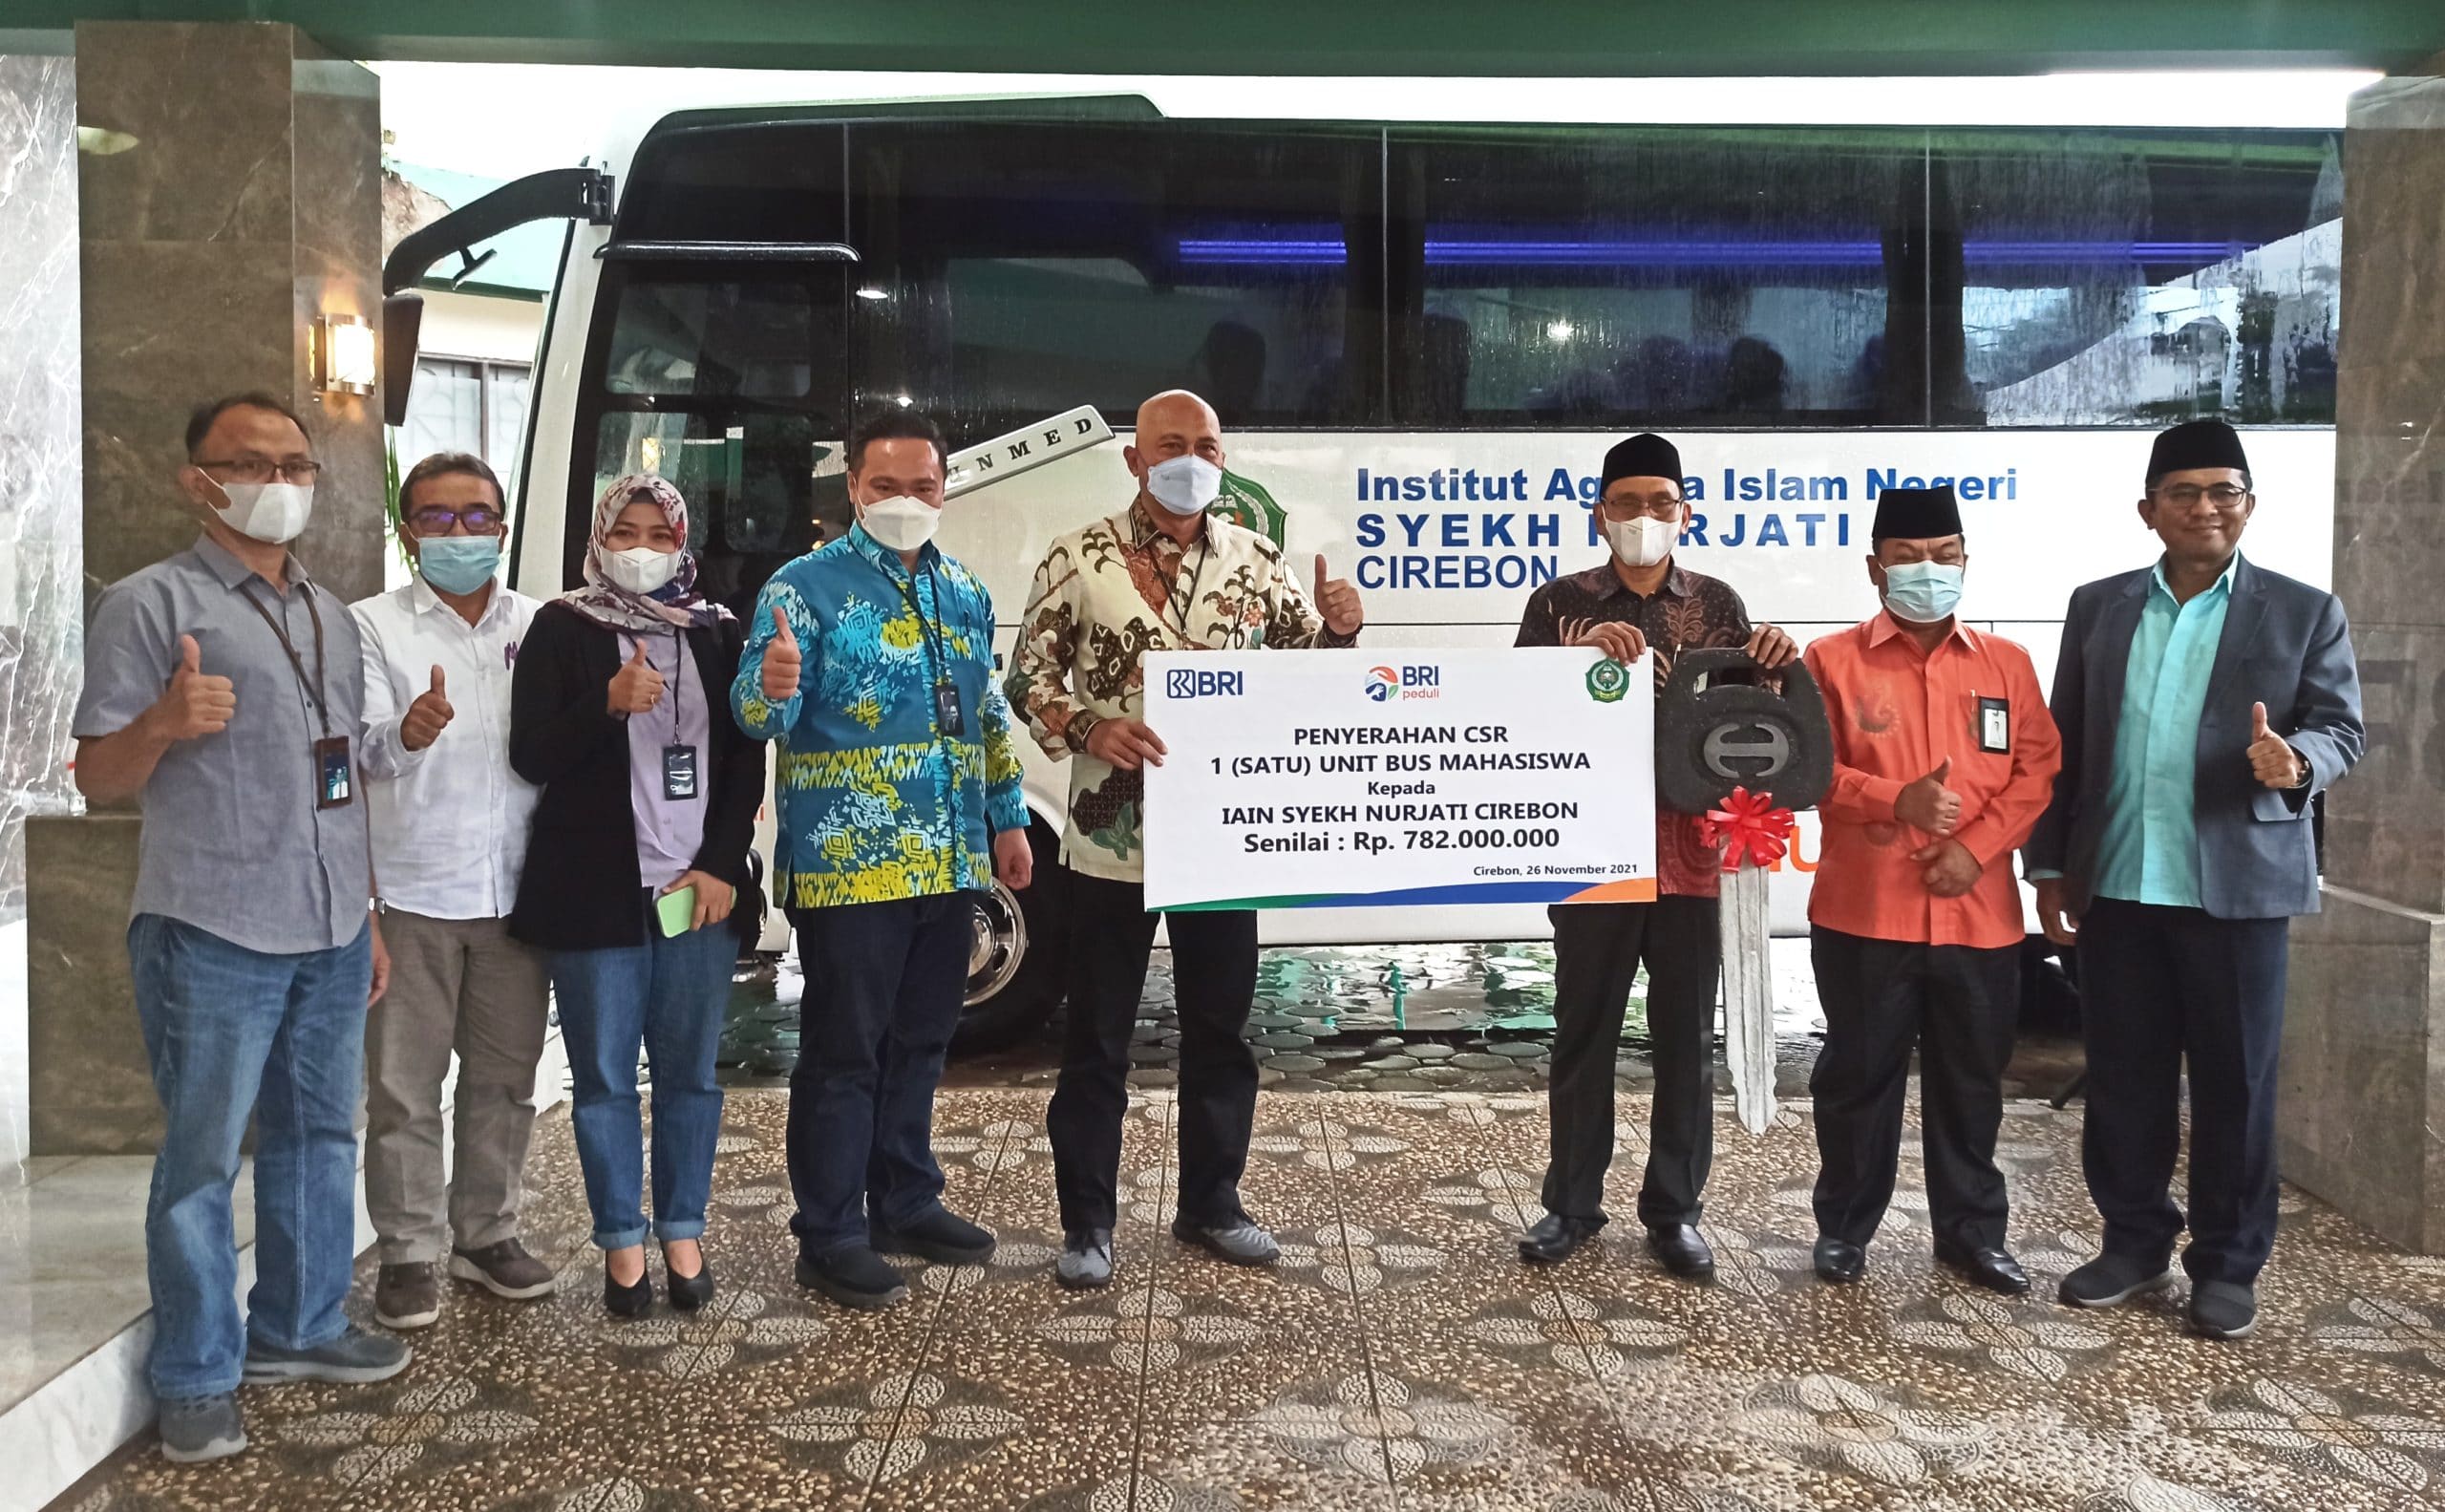 BRI Cirebon Kartini Serahkan Bus Rp782 Juta, Tunaikan CSR ke IAIN Cirebon untuk Tri Dharma Perguruan Tinggi